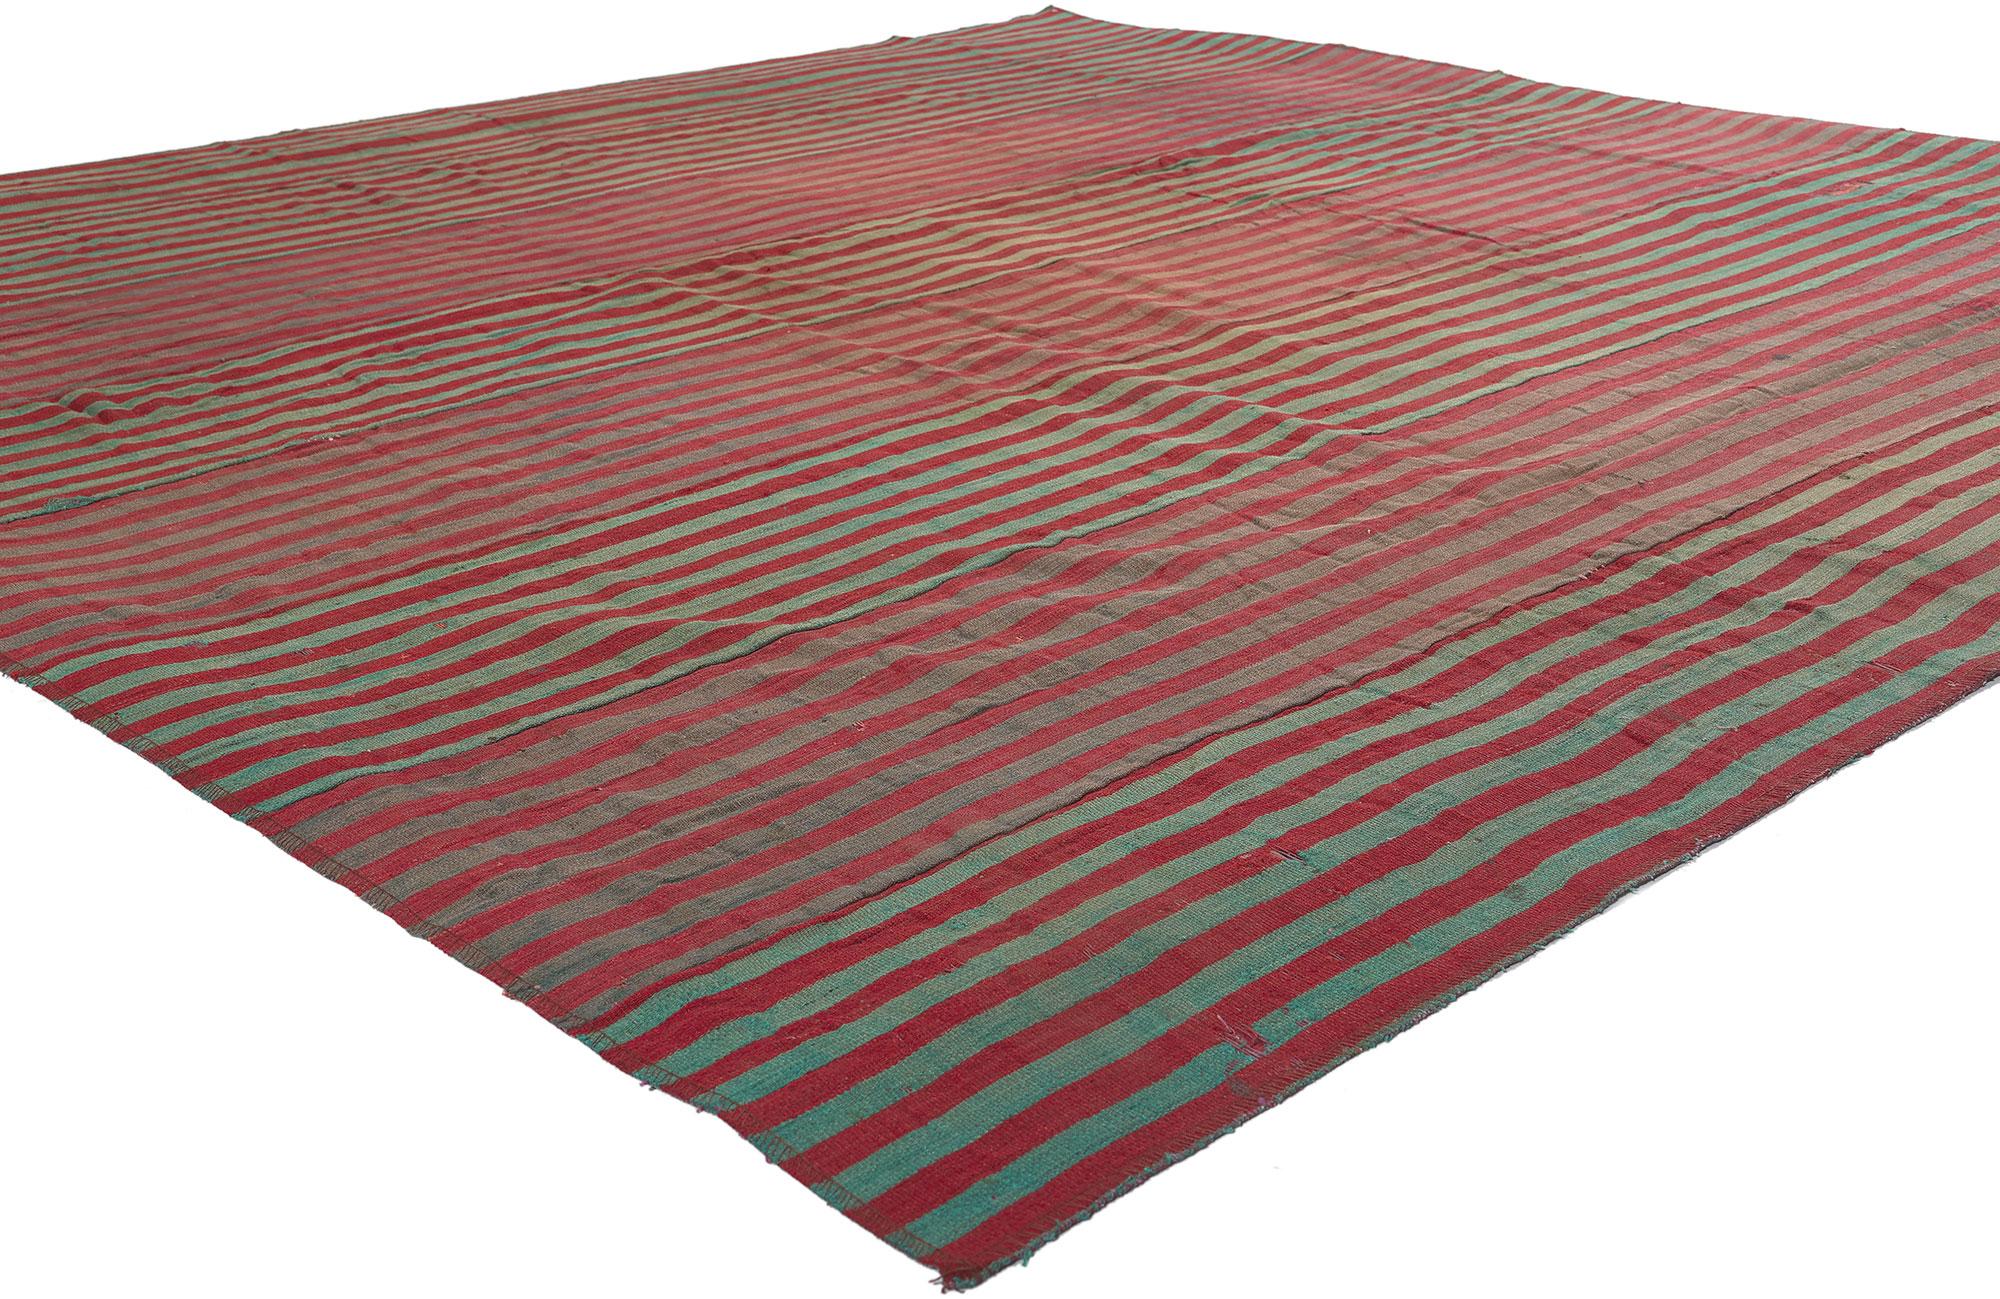 60654 Rustikaler gestreifter türkischer Vintage-Kilim-Teppich, 07'03 x 07'06.
Dieser handgewebte türkische Kelimteppich aus Wolle vereint den Charme des Wetters mit rustikaler Sensibilität. Das bengalische Streifenmuster und die verblassten Farben,